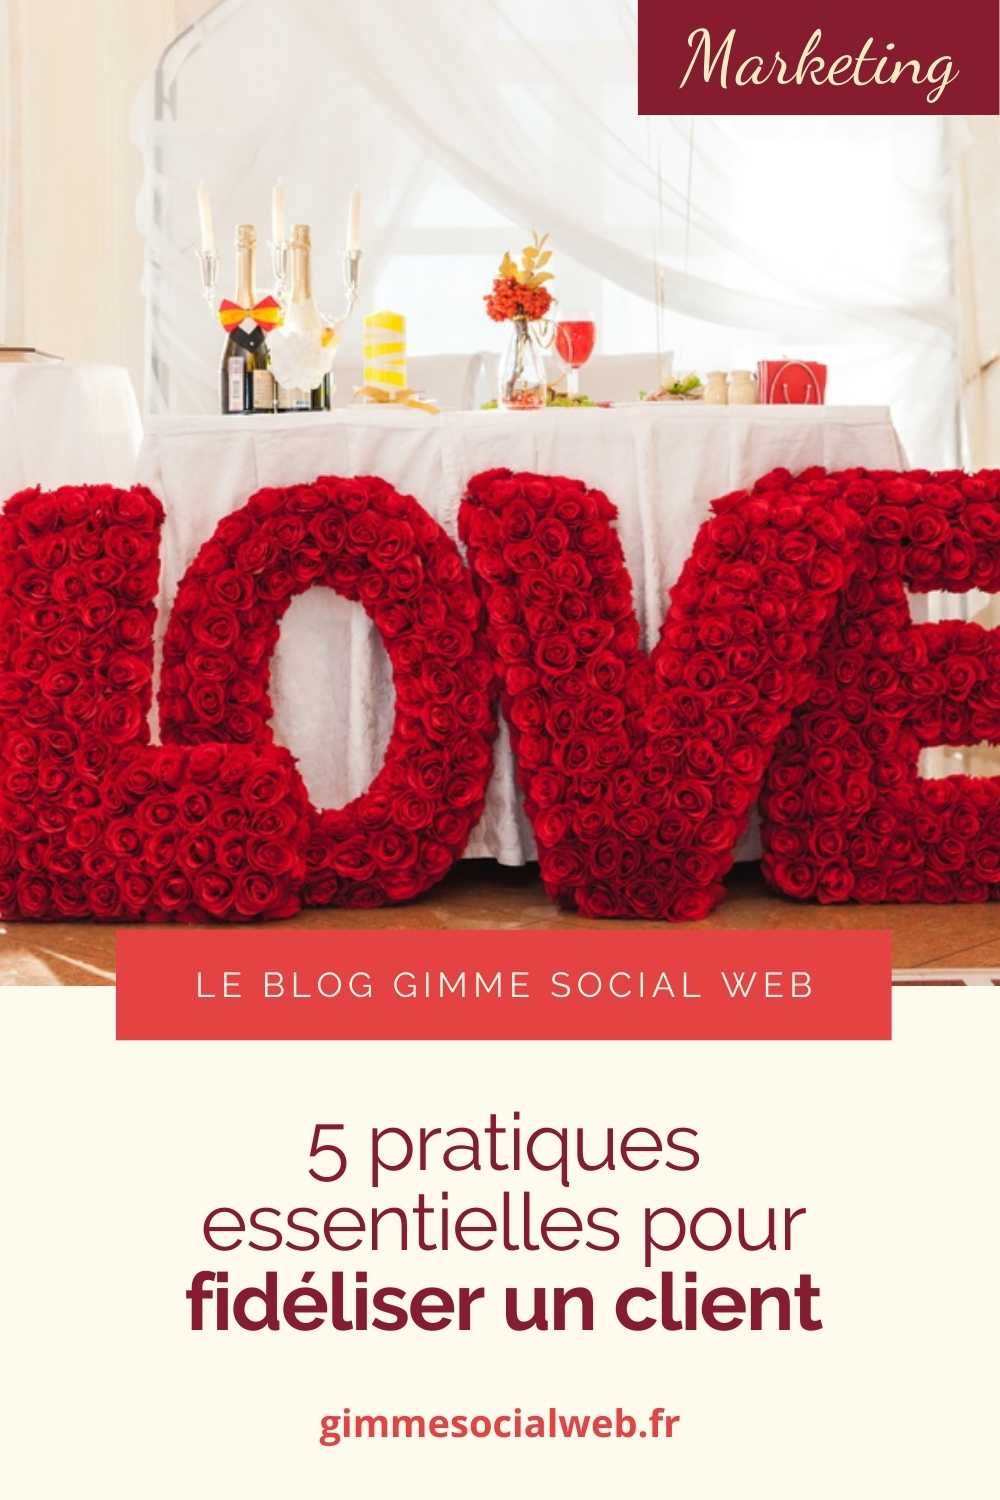 Buffet de mariage et lettres géantes LOVE en fleurs + cover Epingle Pinterest - fidéliser un client